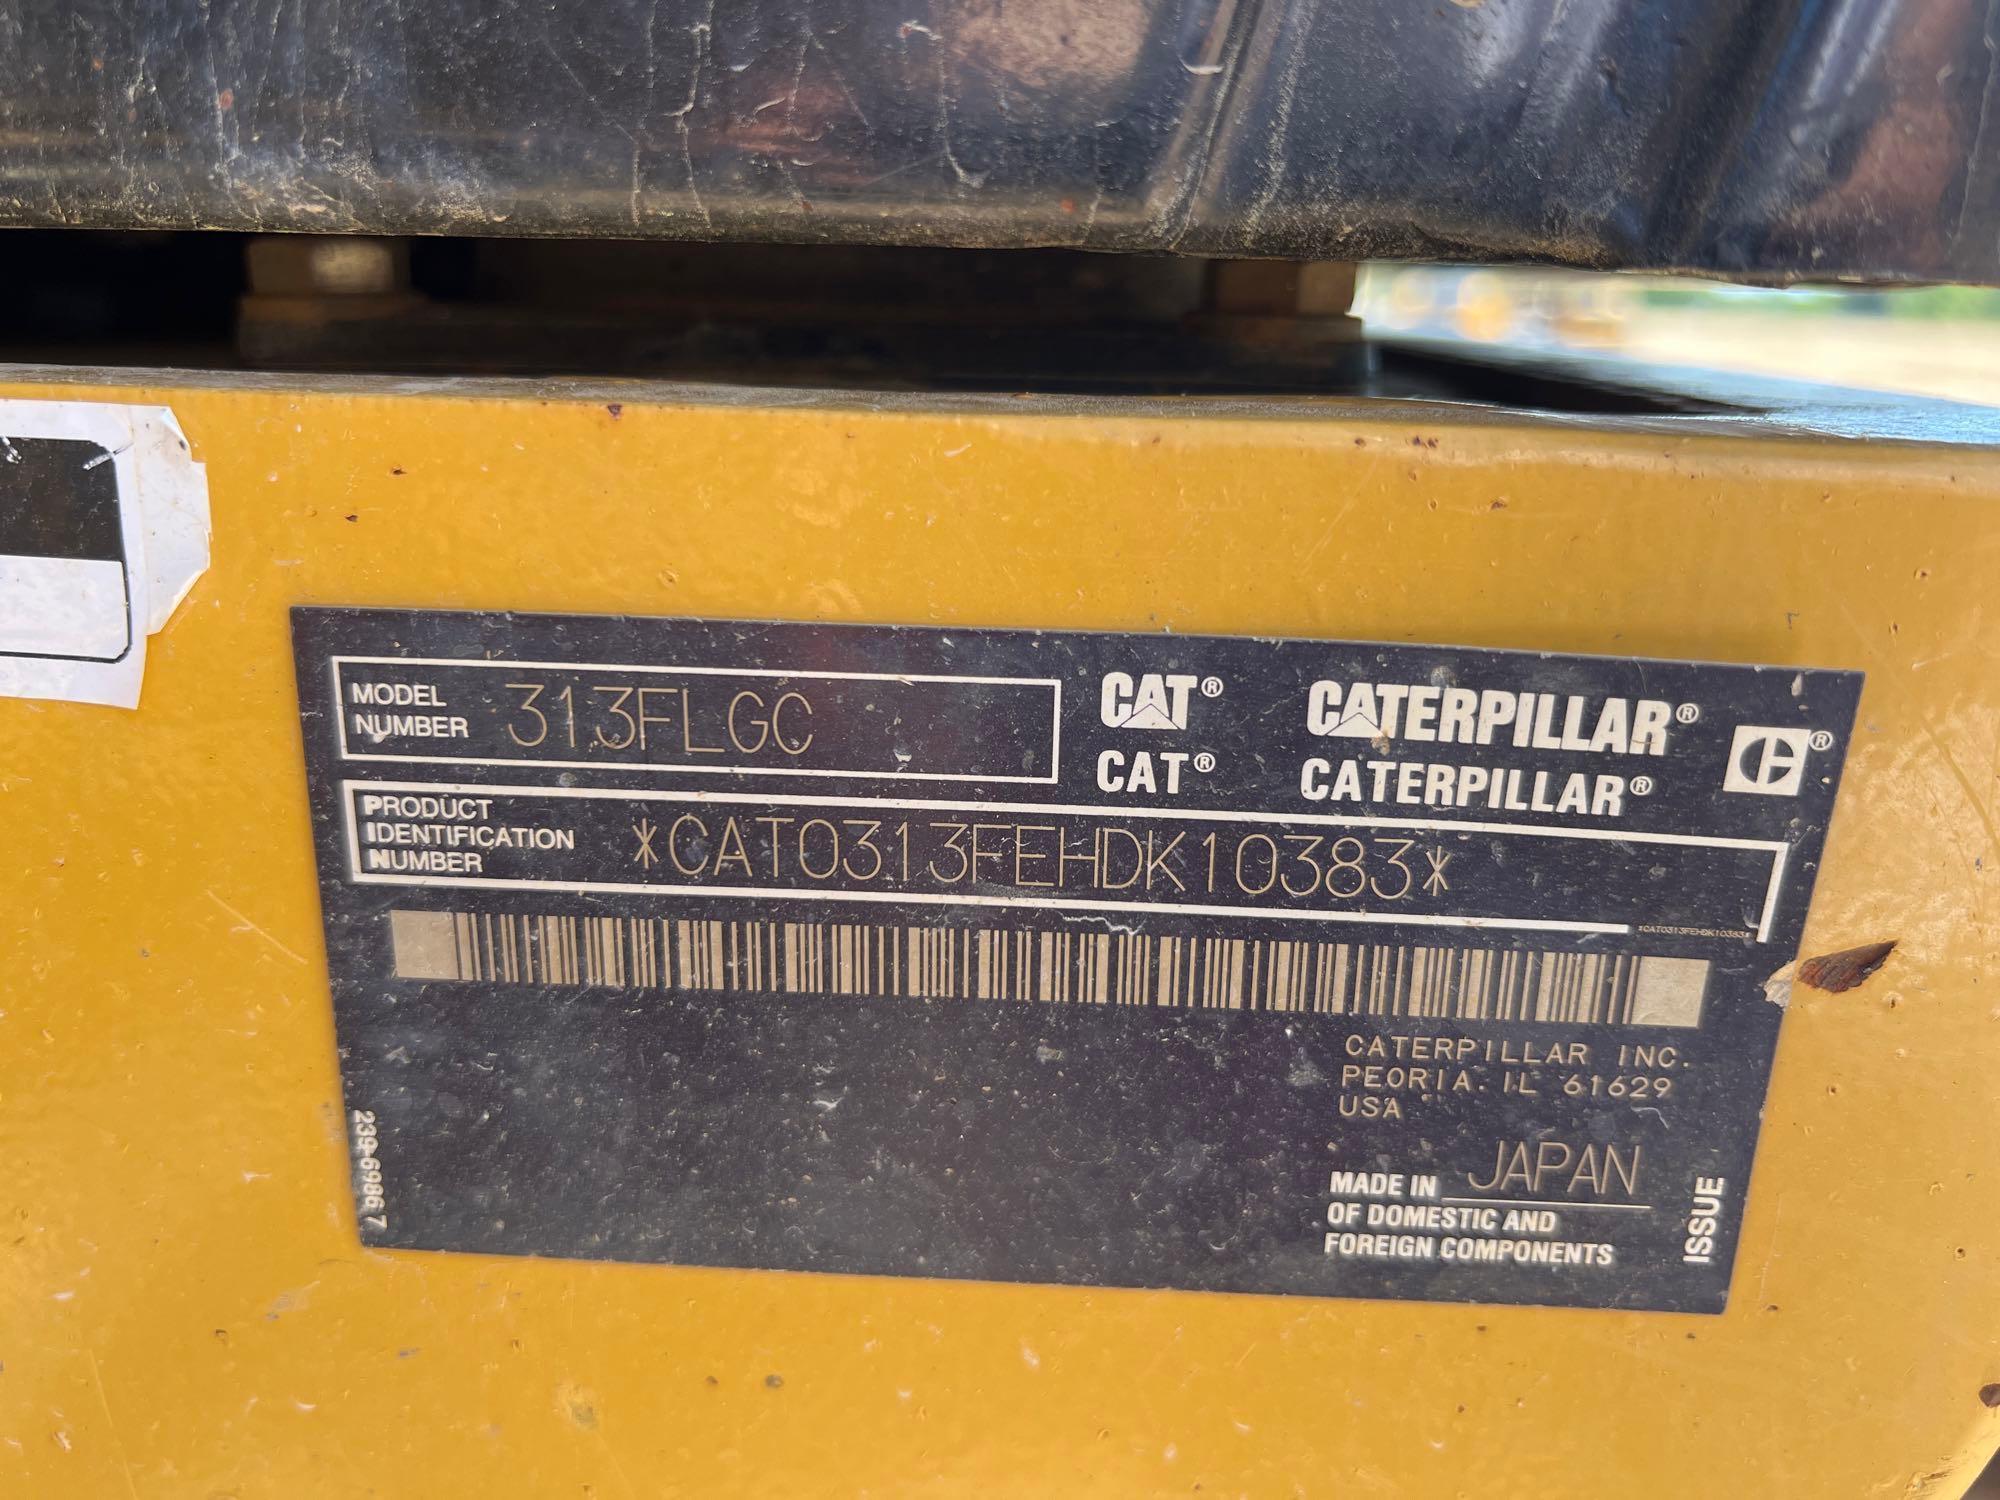 2019 CATERPILLAR 313FL GC EXCAVATOR